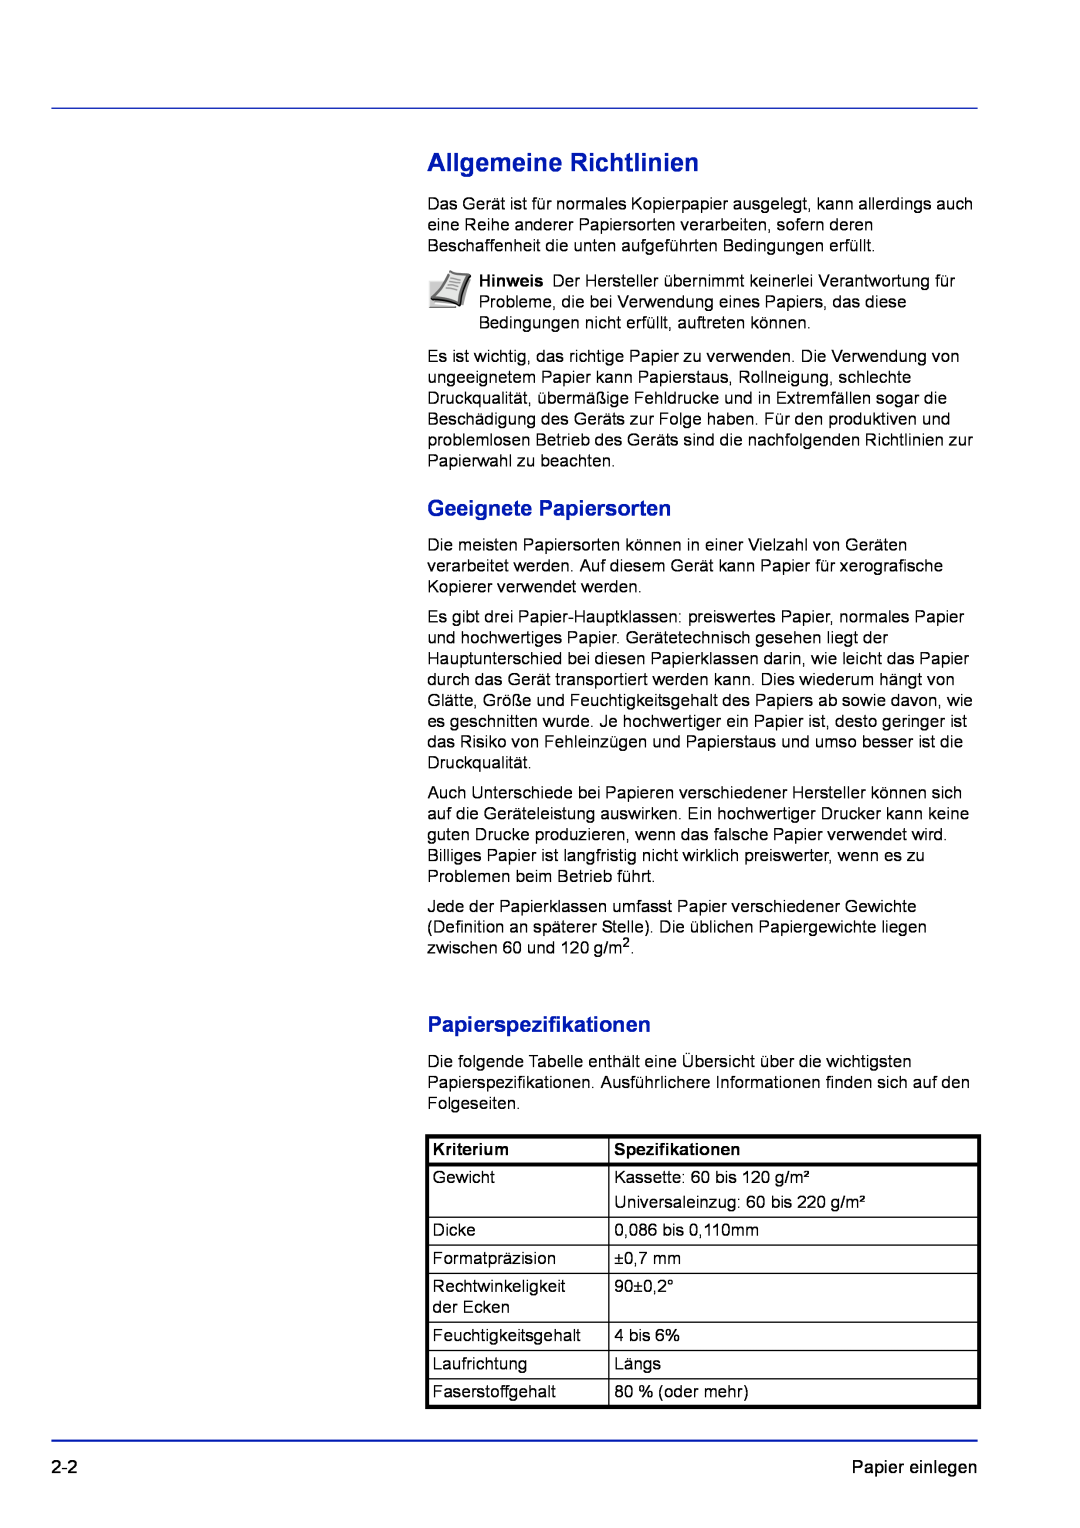 Kyocera FS-1120D manual Allgemeine Richtlinien, Geeignete Papiersorten, Papierspezifikationen, Kriterium, Spezifikationen 